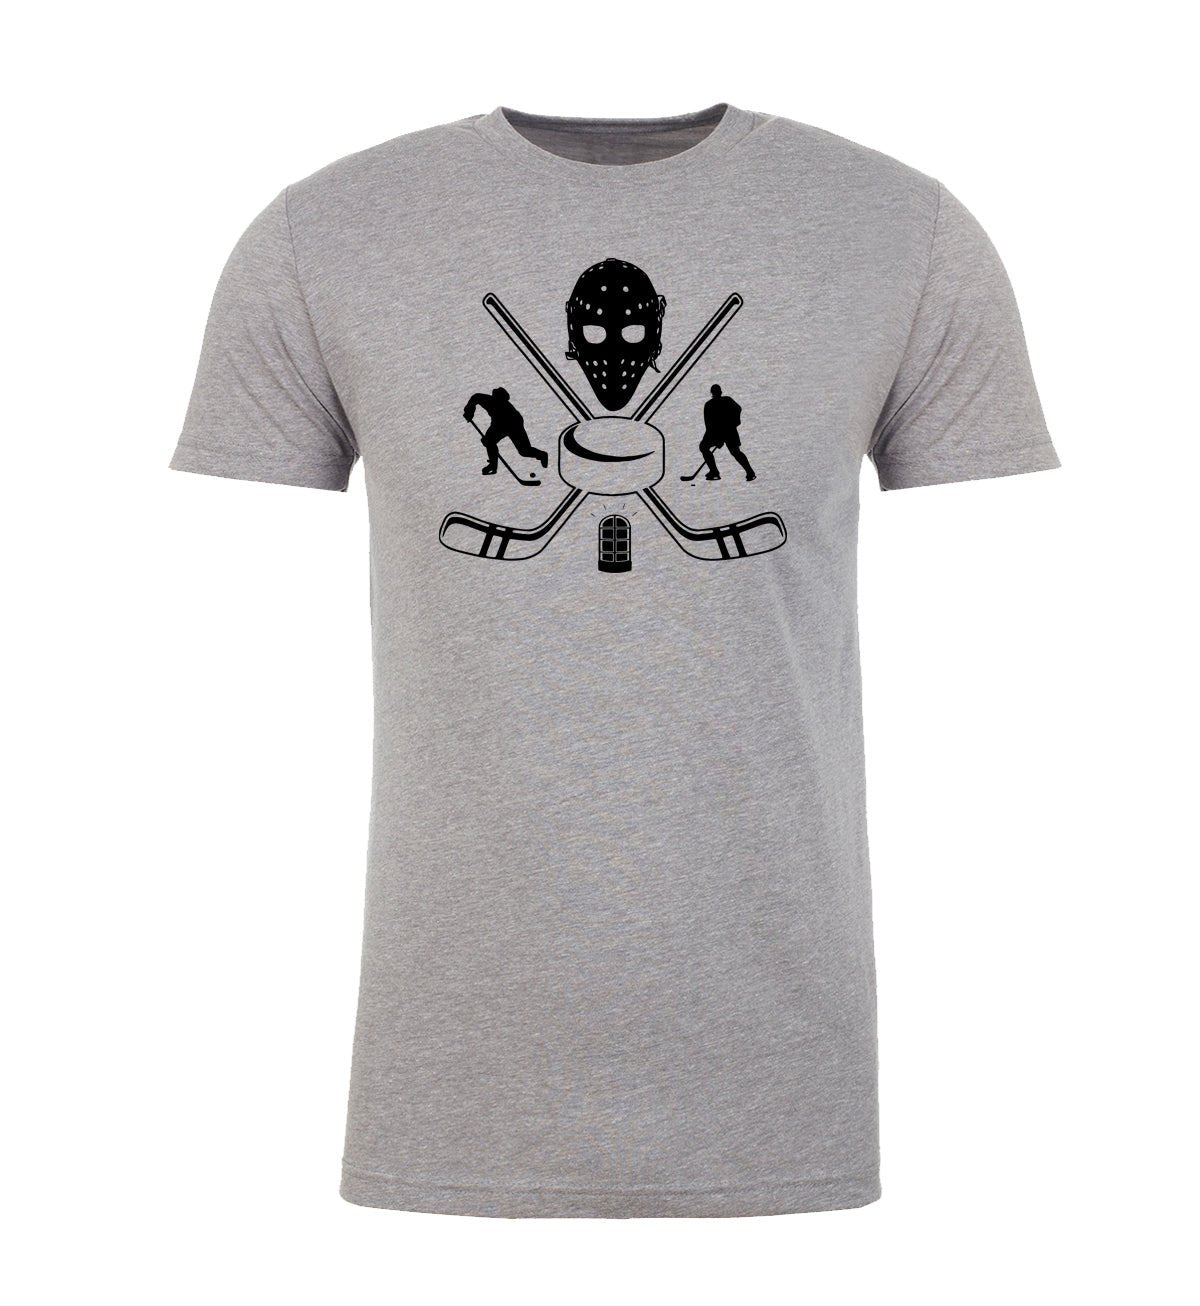 Vintage Hockey Goalie Mask Unisex T Shirts - Mato & Hash